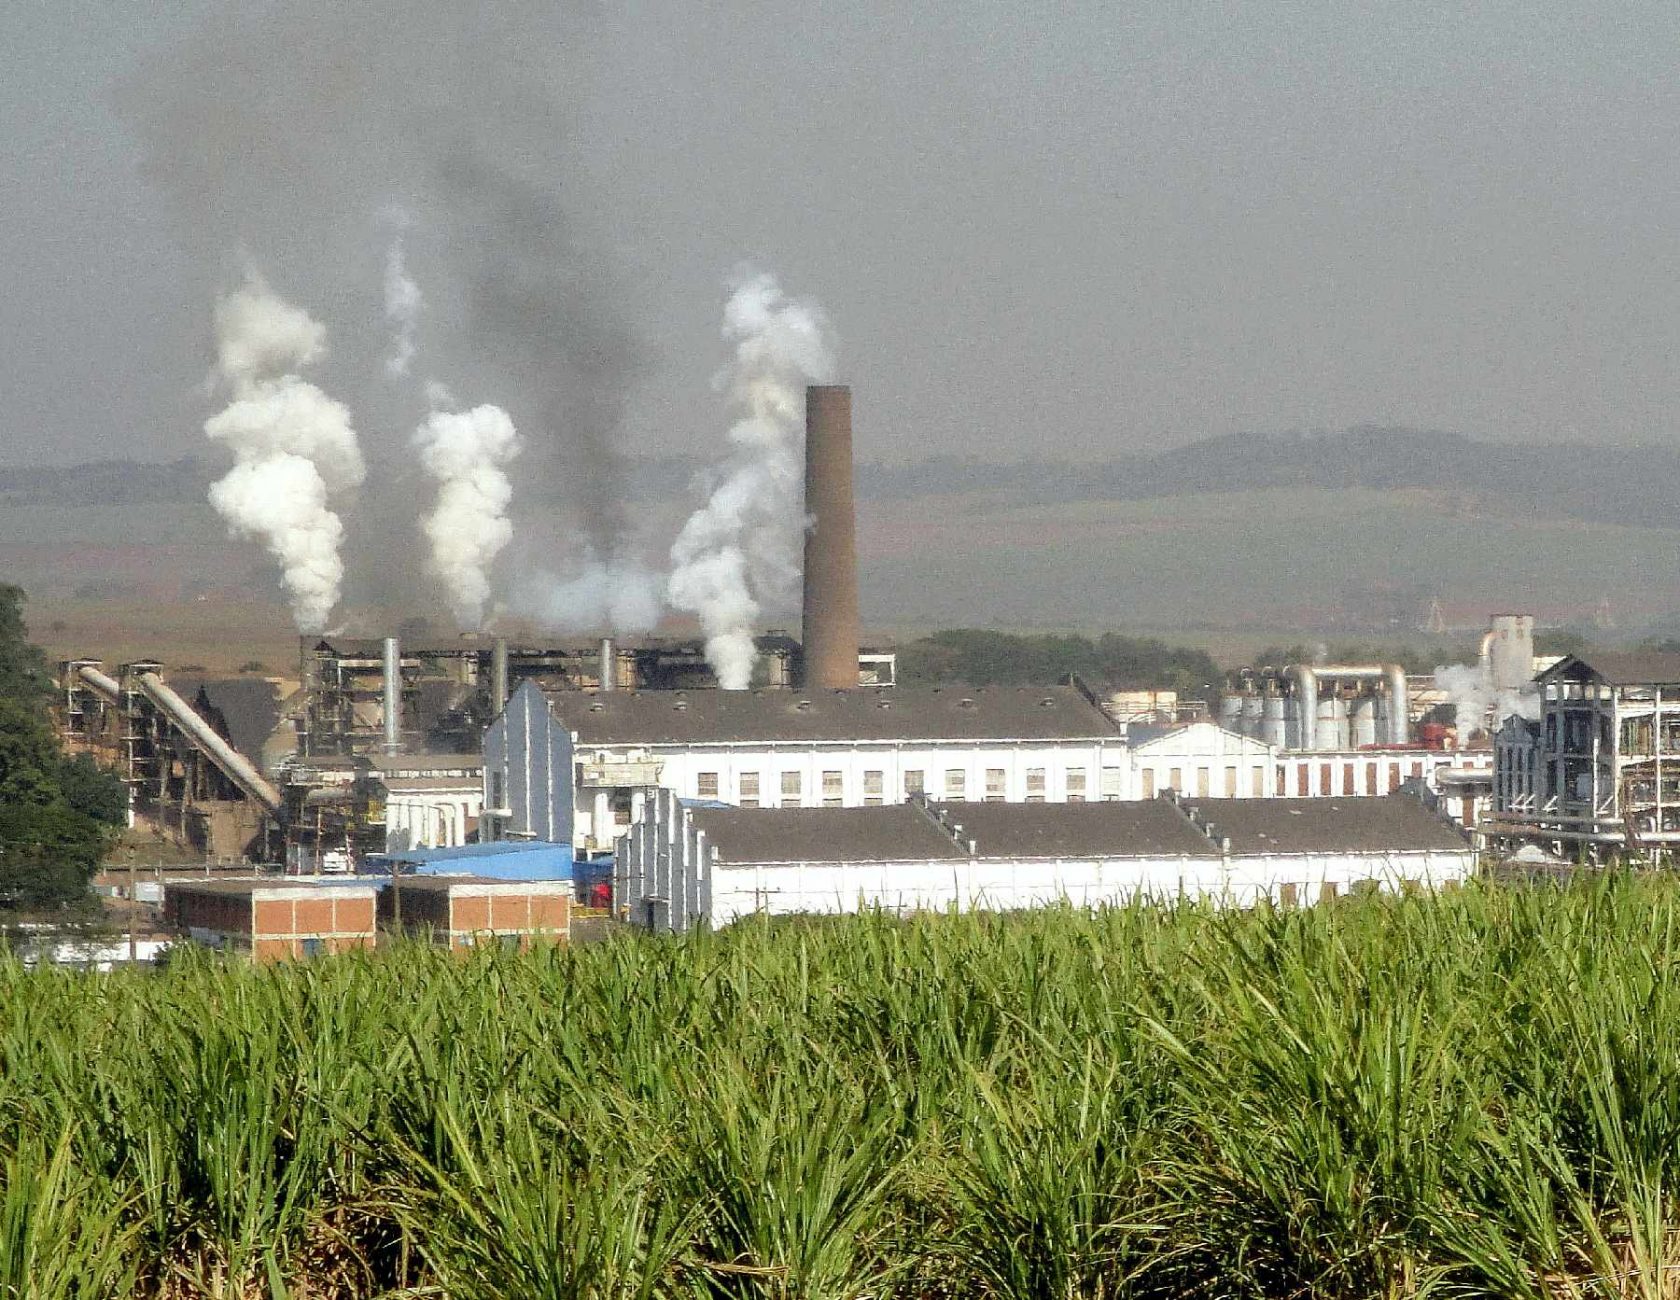 São Martinho plant, which produces sugar and ethanol in Pradópolis, São Paulo state - Wikipedia